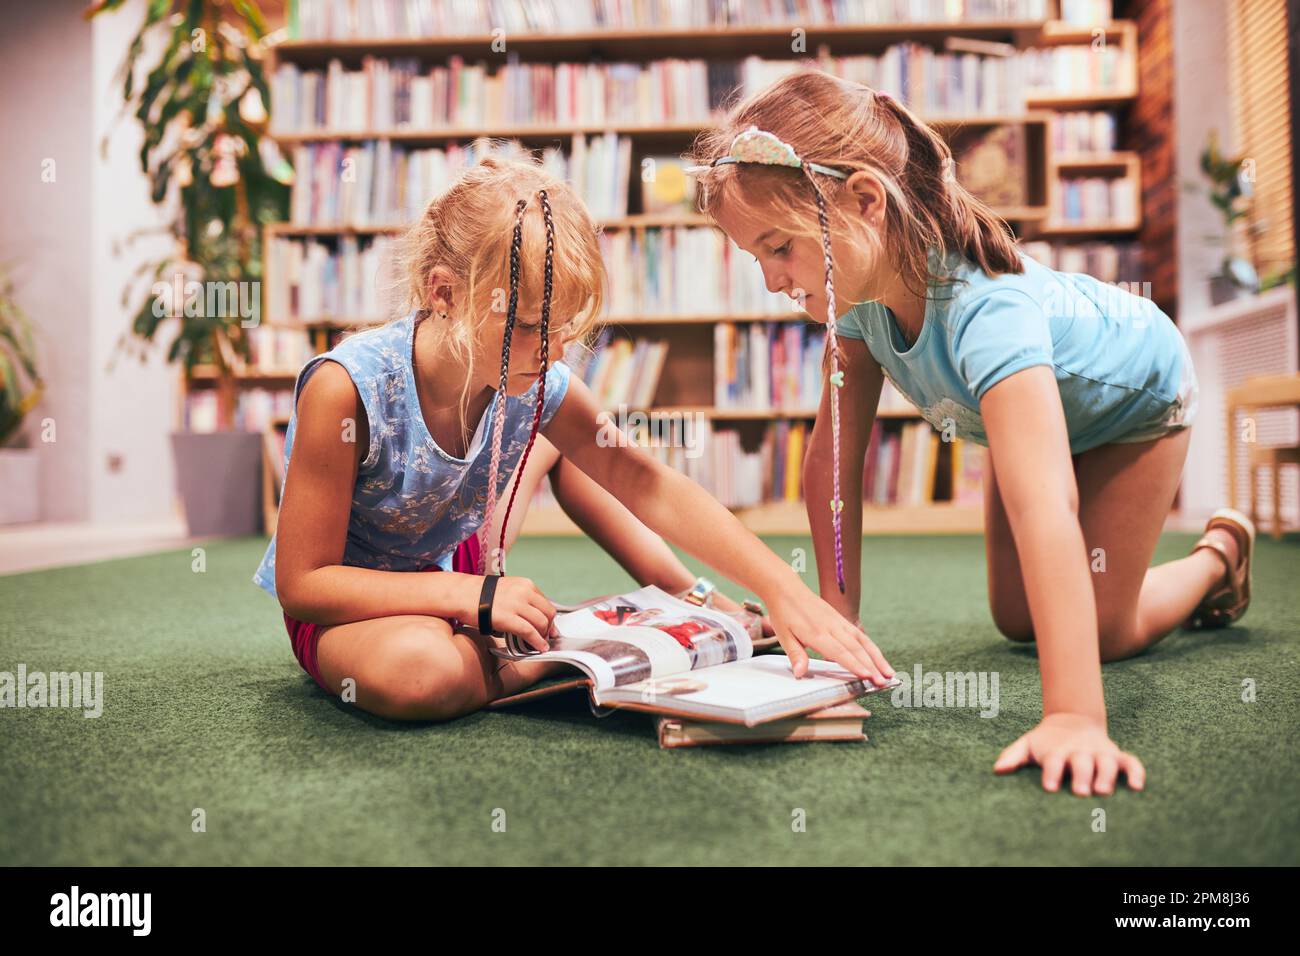 Deux écolières lisent des livres dans la bibliothèque de l'école. Les élèves de l'école primaire apprennent à partir de livres. Élèves faisant leurs devoirs. Les enfants s'amusent avec des livres Banque D'Images